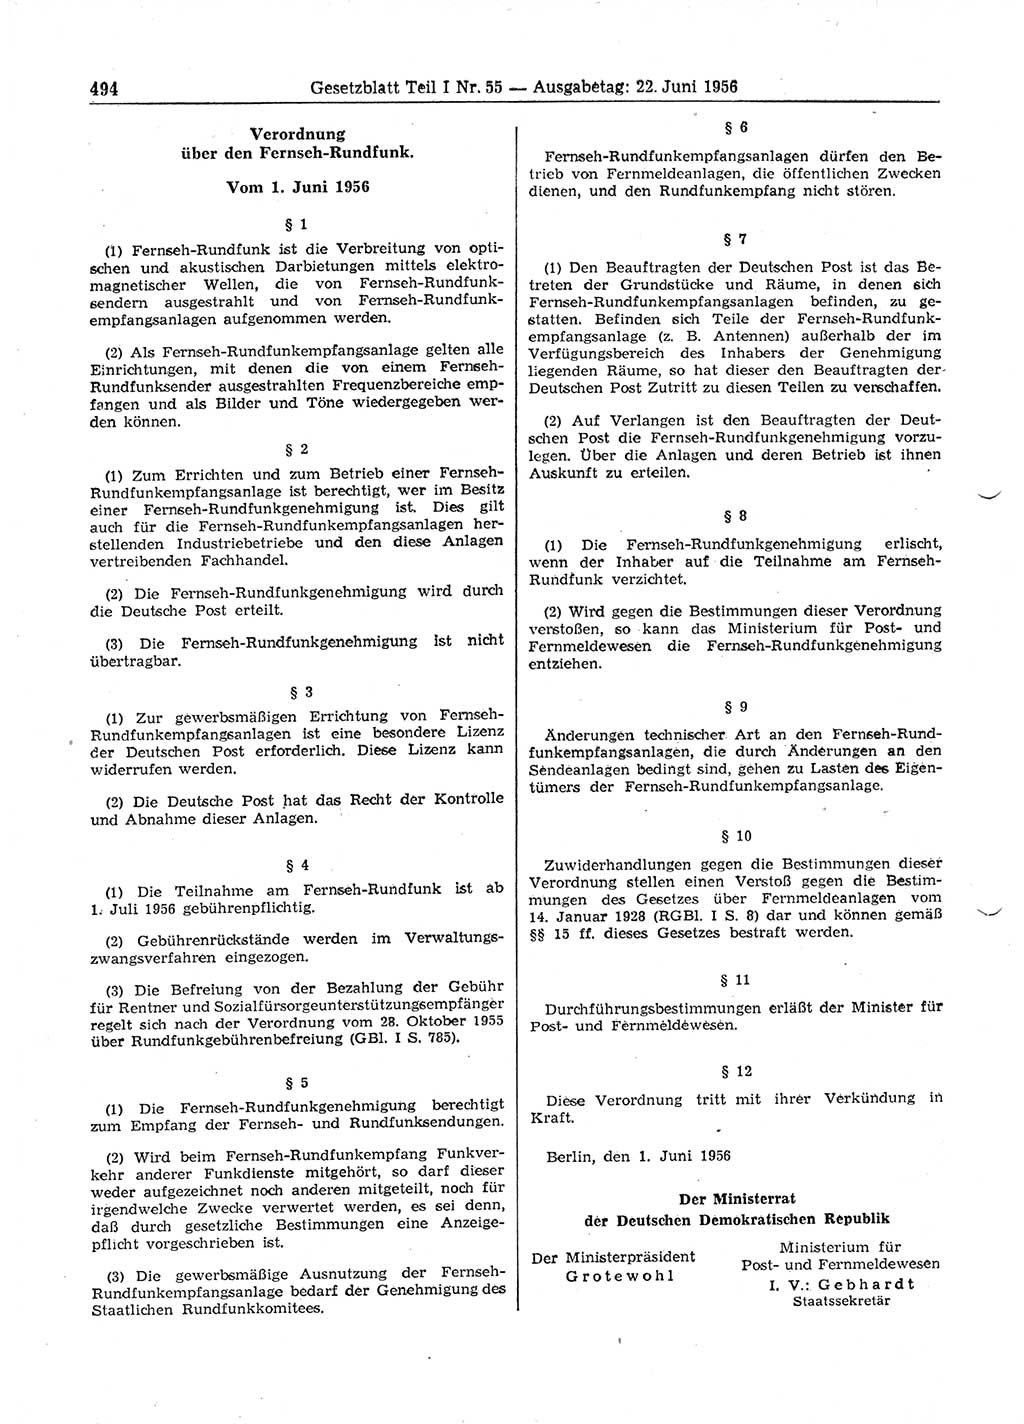 Gesetzblatt (GBl.) der Deutschen Demokratischen Republik (DDR) Teil Ⅰ 1956, Seite 494 (GBl. DDR Ⅰ 1956, S. 494)